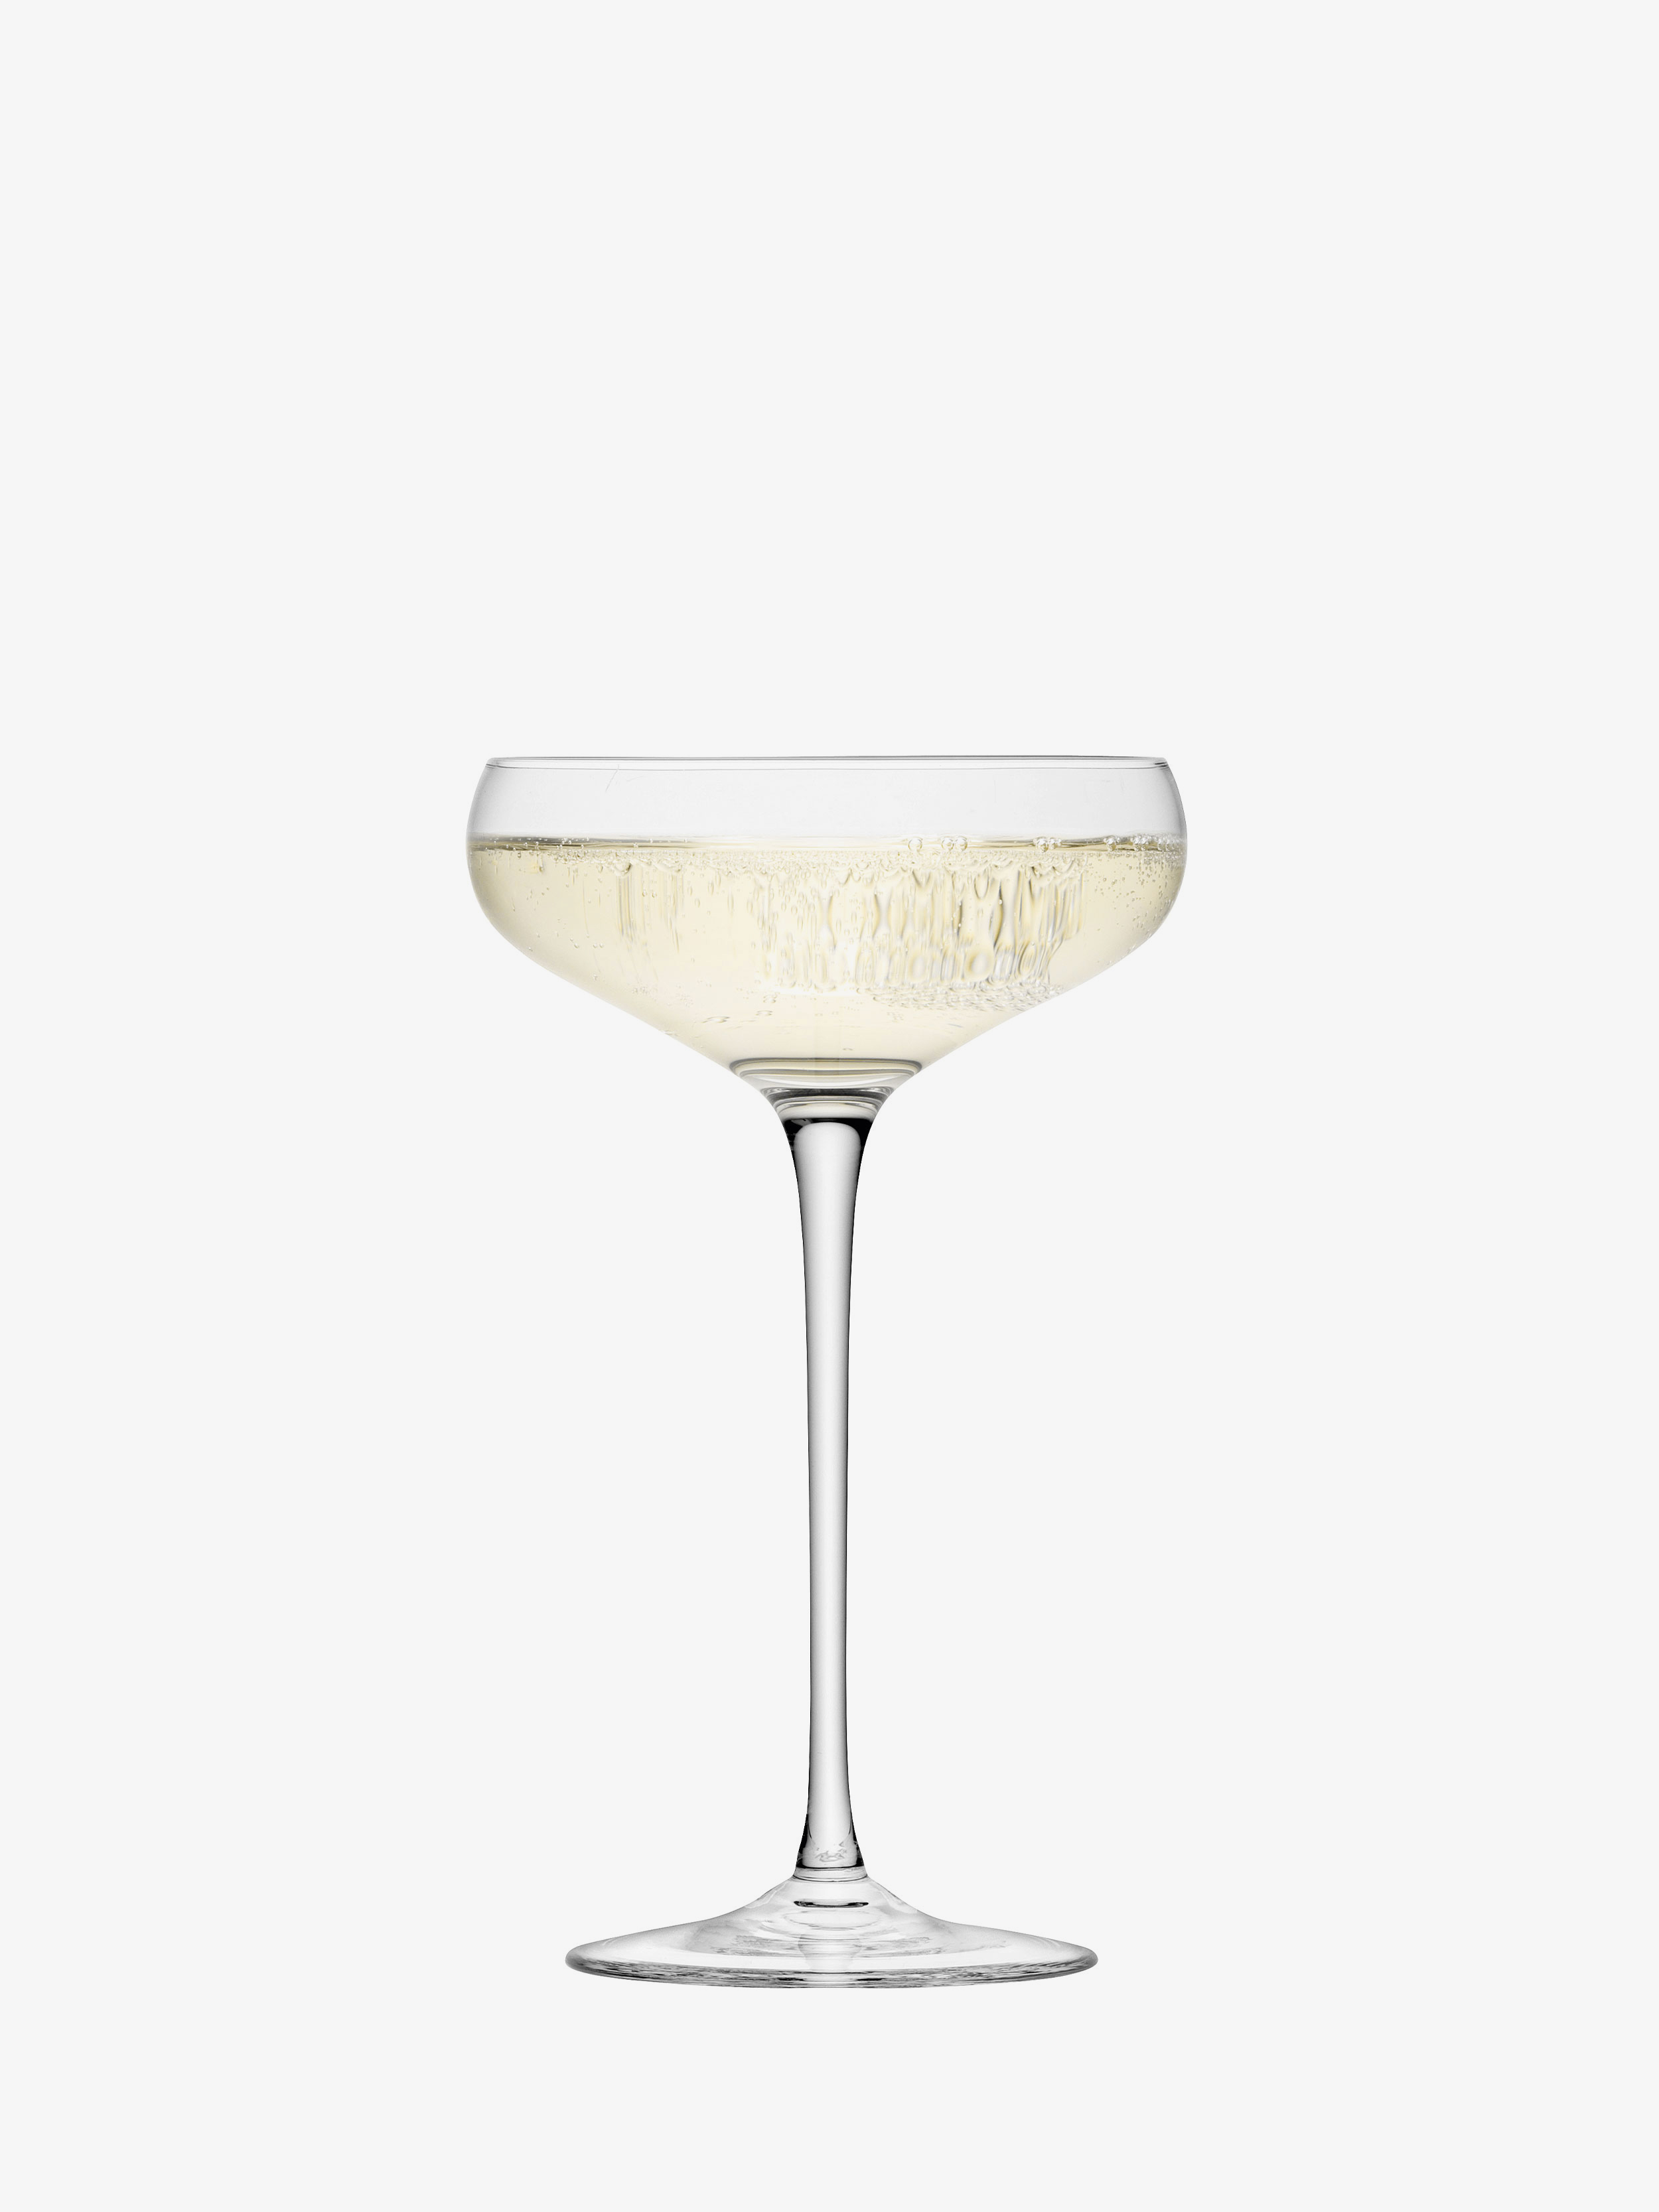 12 x 12 x 19 cm LSA International Vin Culture Champagne Soucoupe Transparent 320 ML X 2 